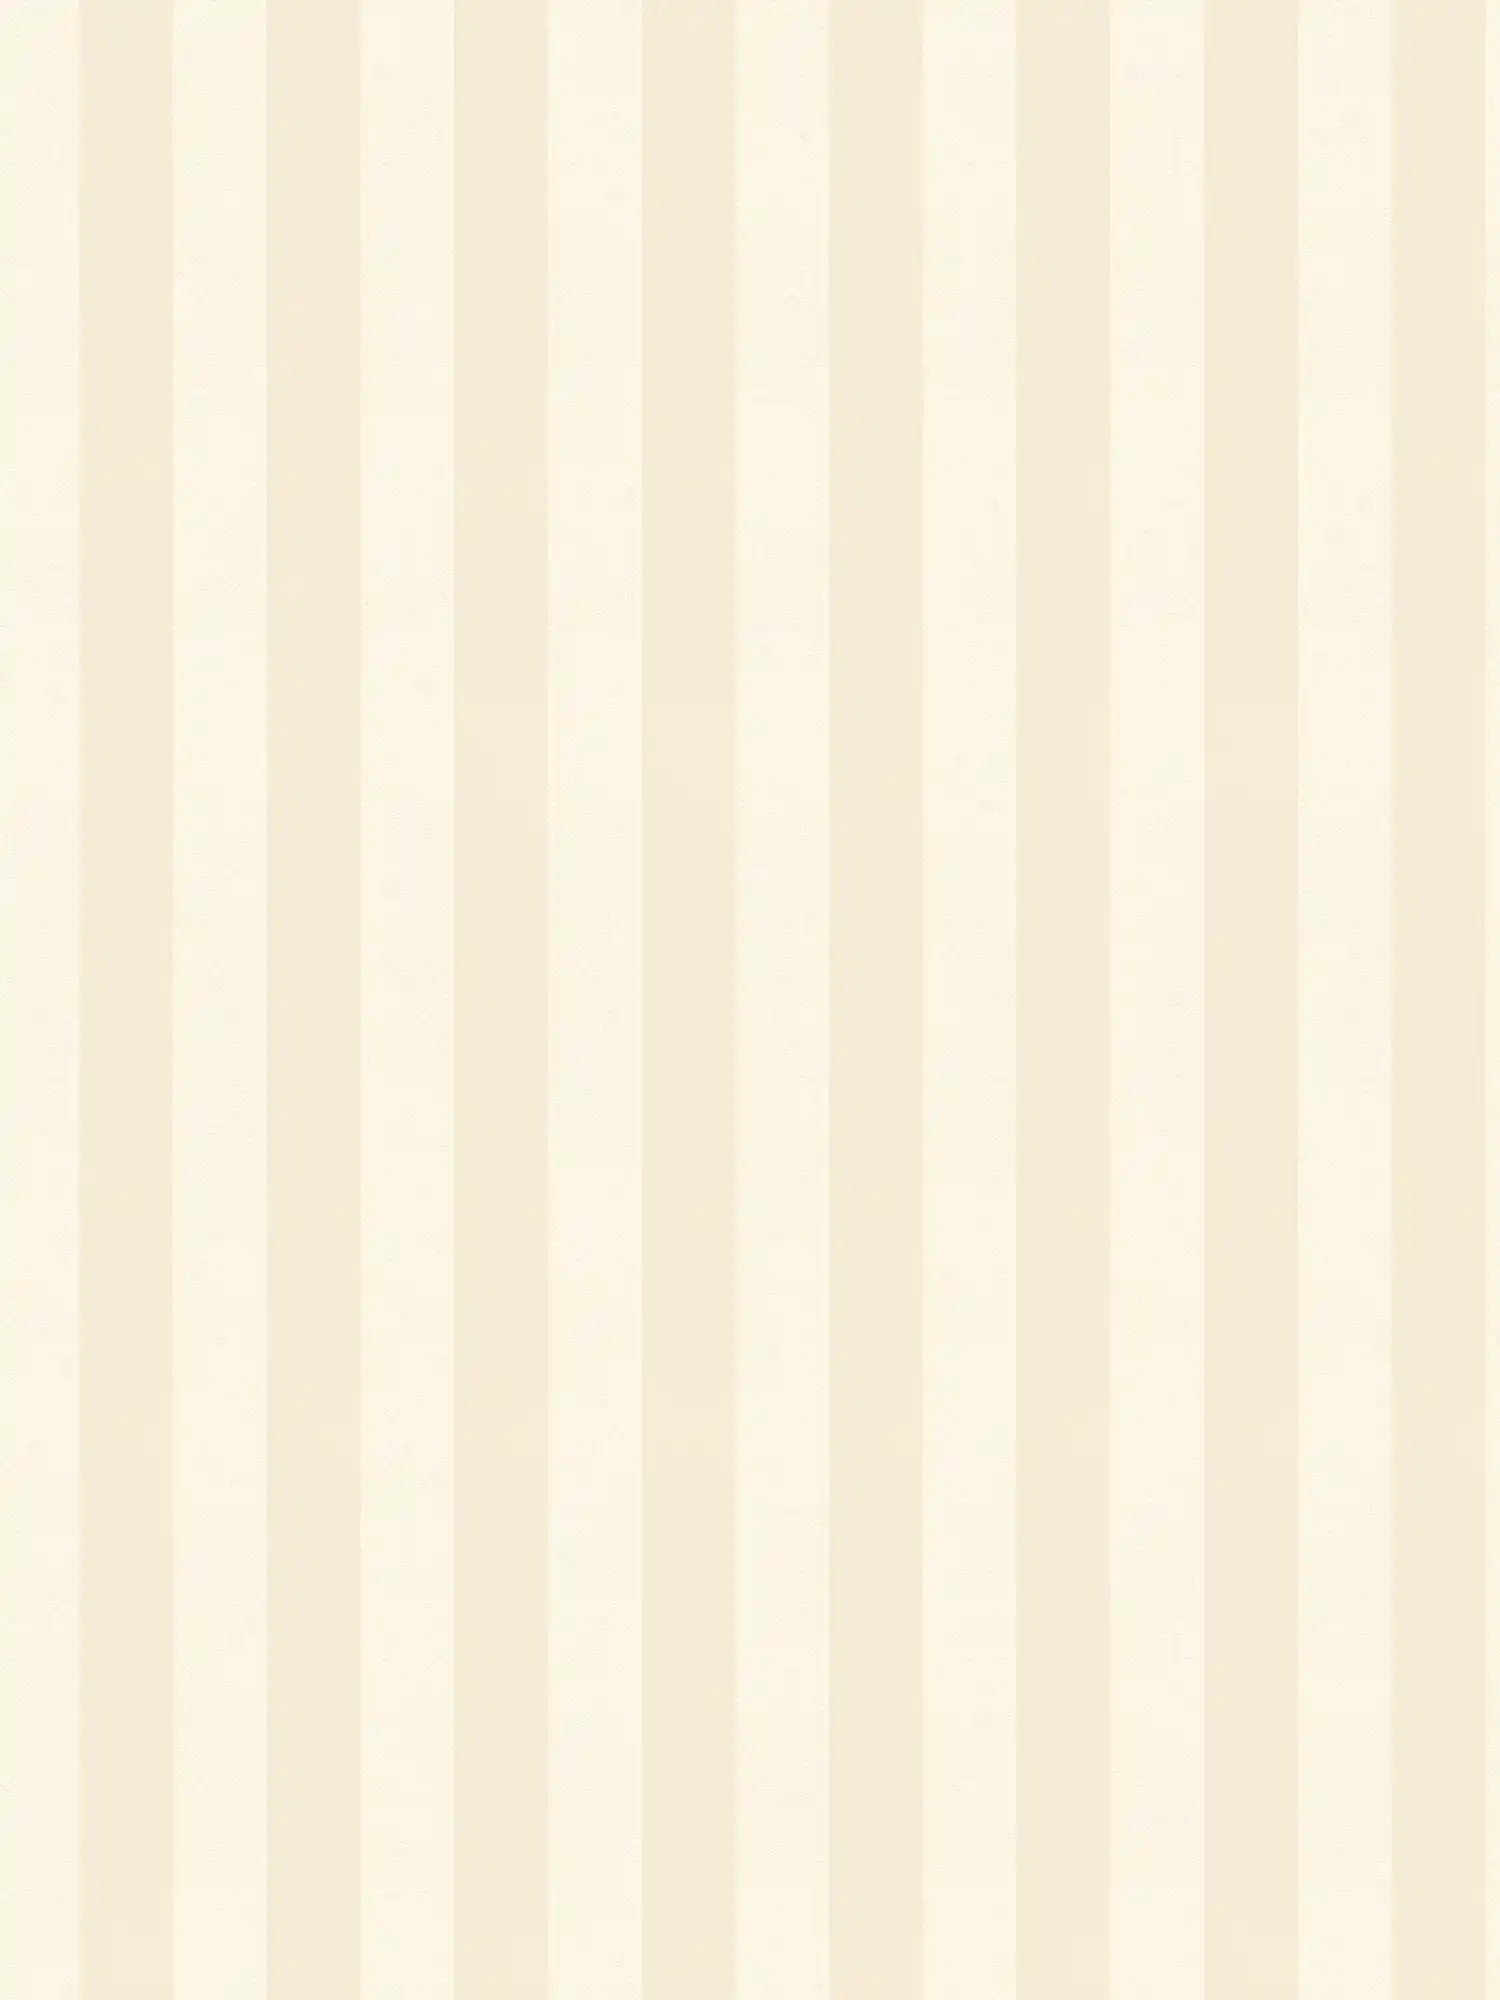 Papier peint à rayures avec motif en crème clair - beige, crème
